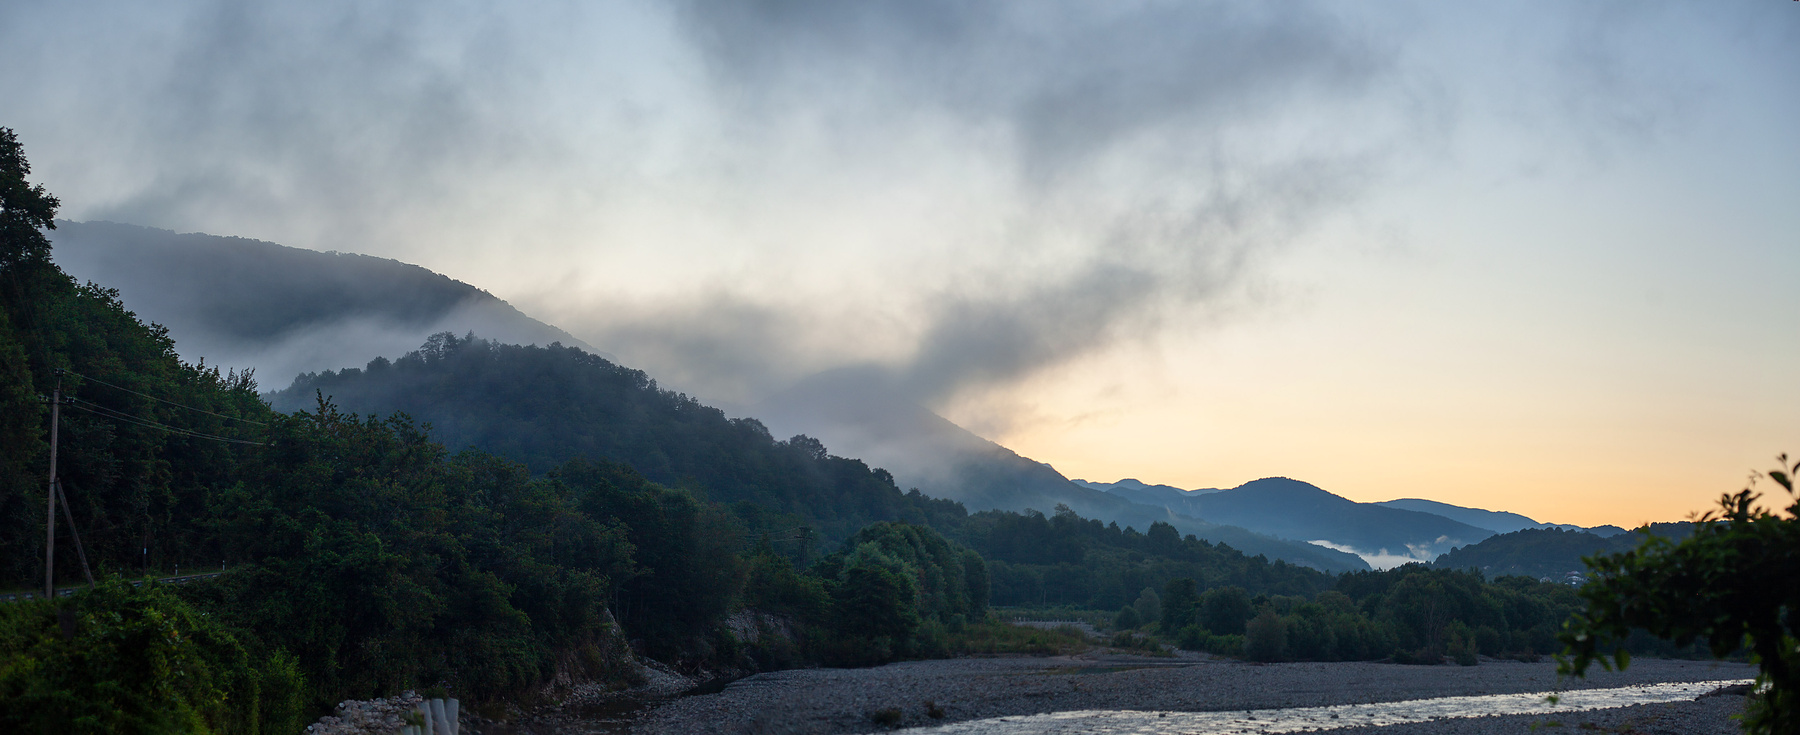 Утро в долине реки Аше река Аше туман утро кавказ